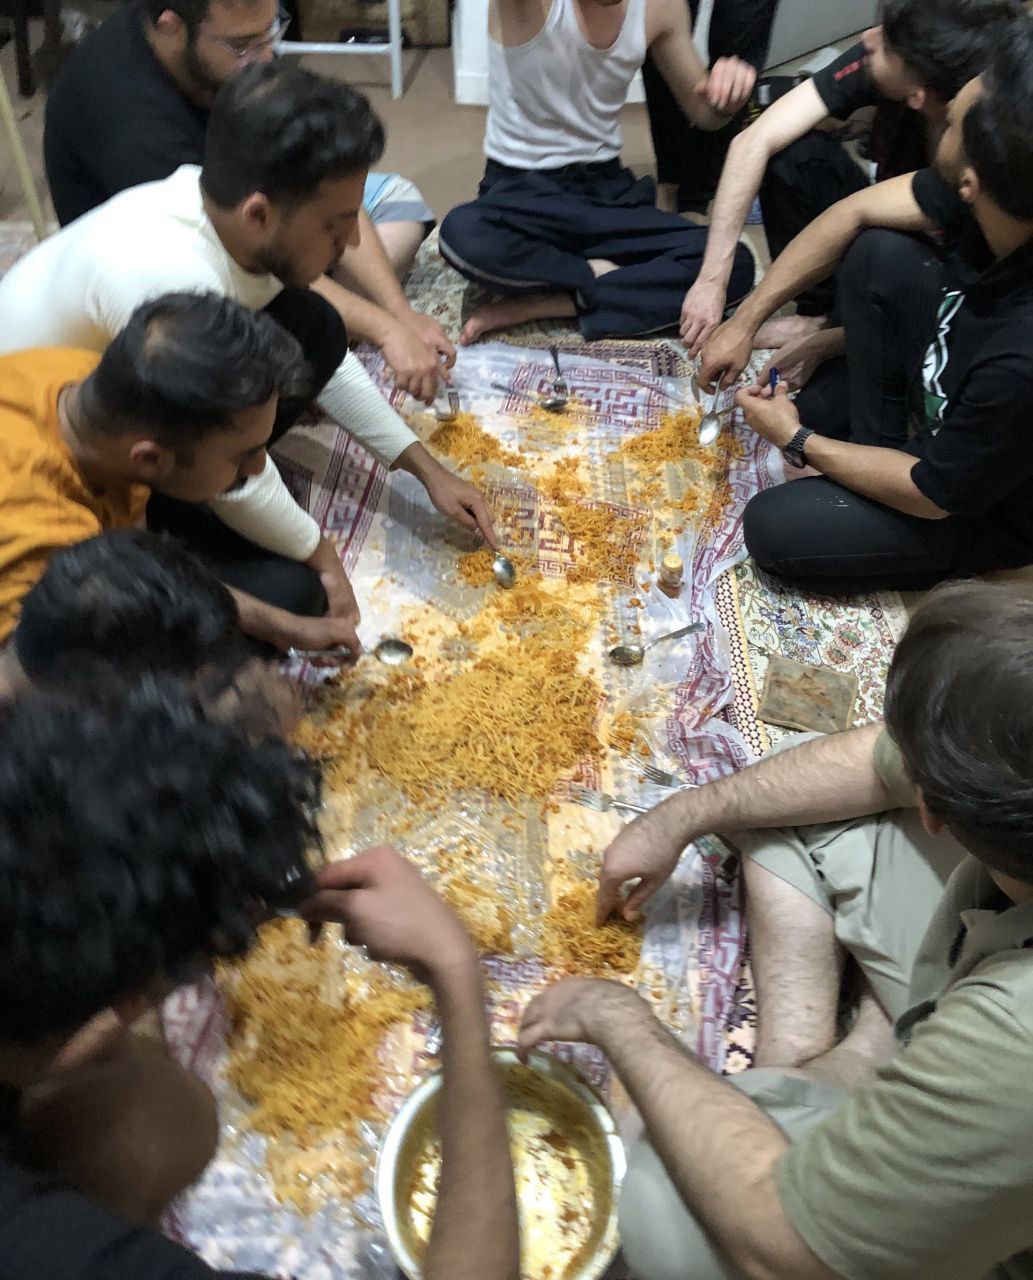 عکس های لو رفته و کاملا خصوصی از چند خوابگاه دانشجویی در ایران